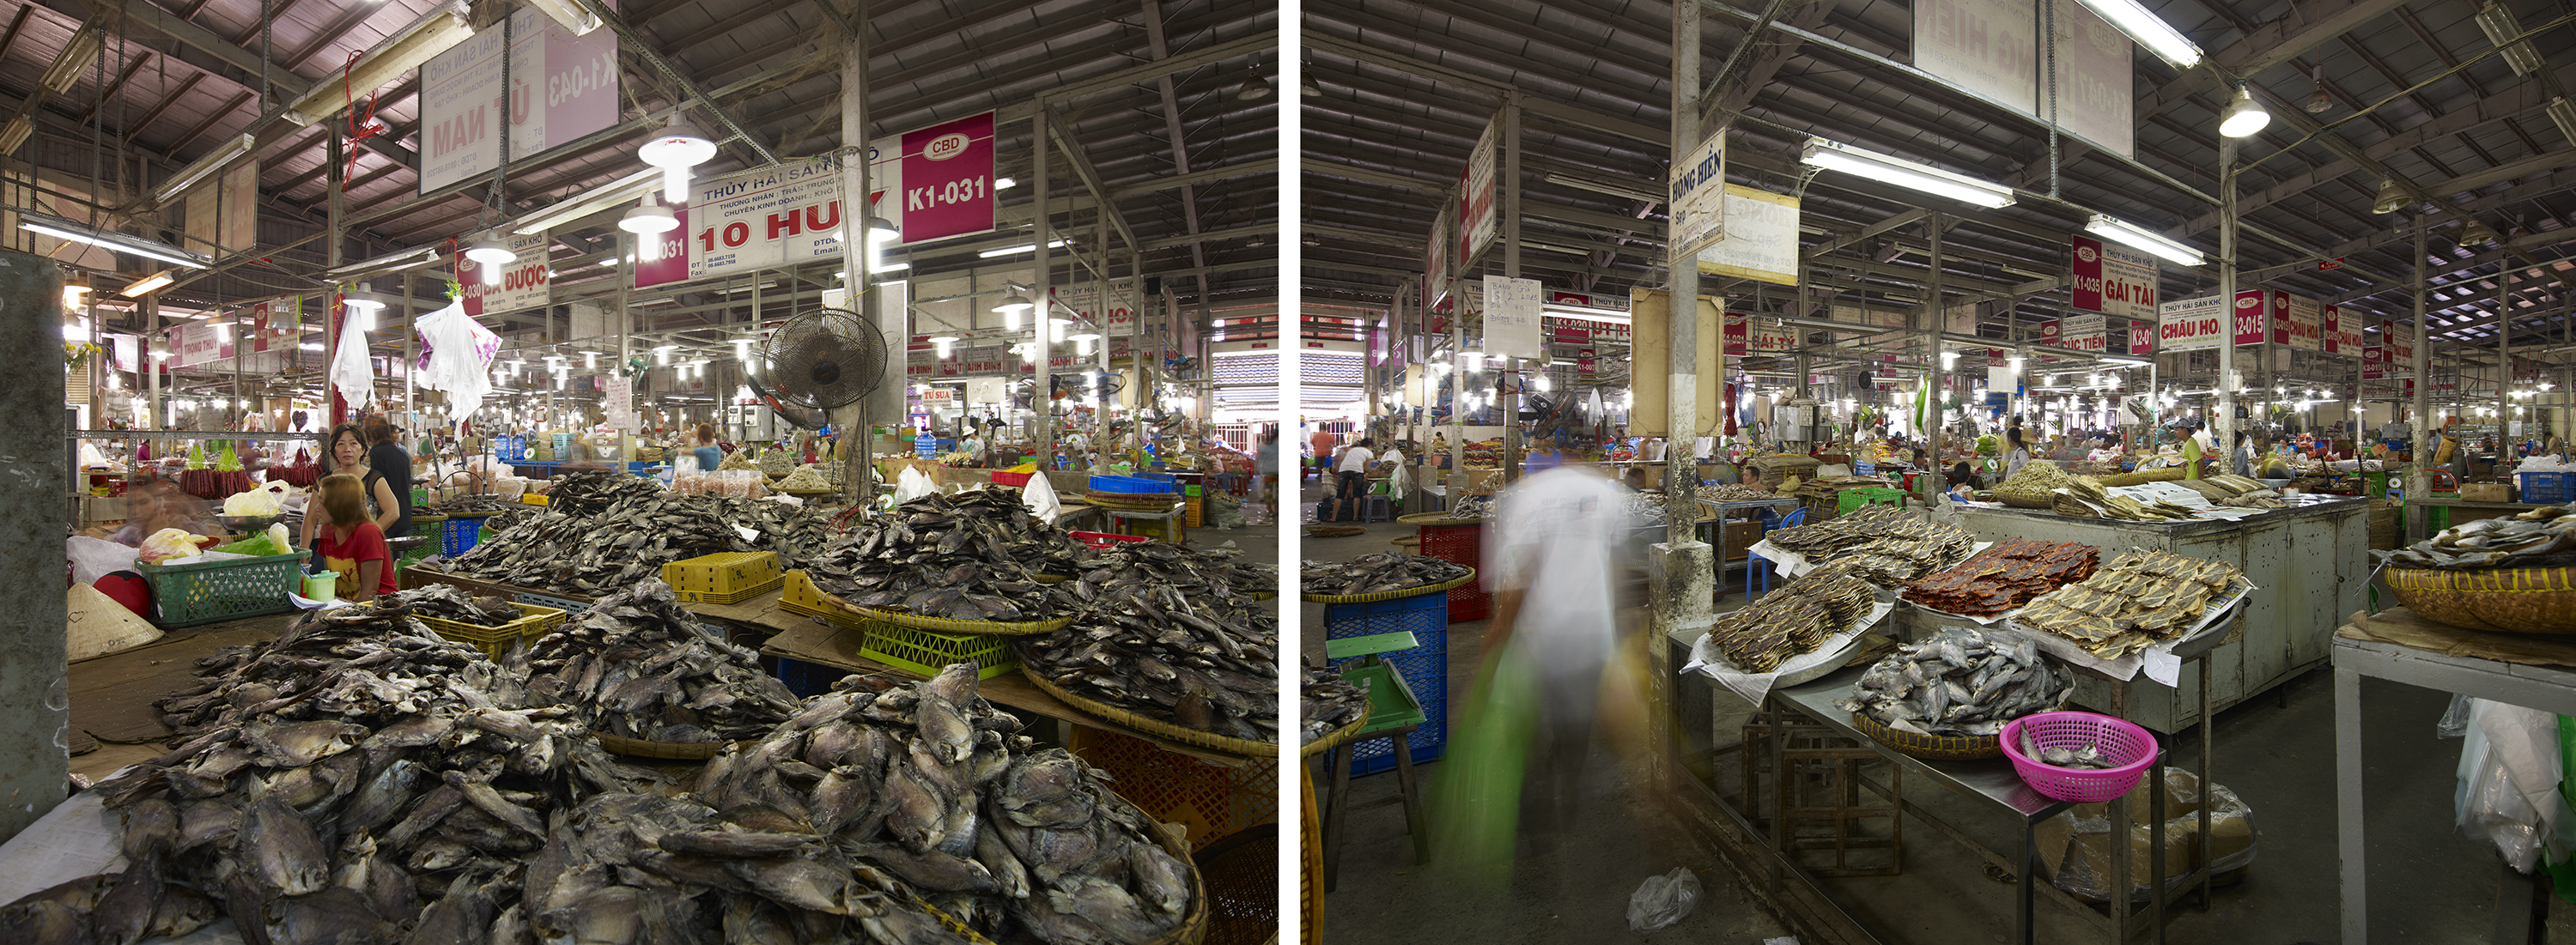 Dried Fish Market #1, Saigon, Vietnam, 2013